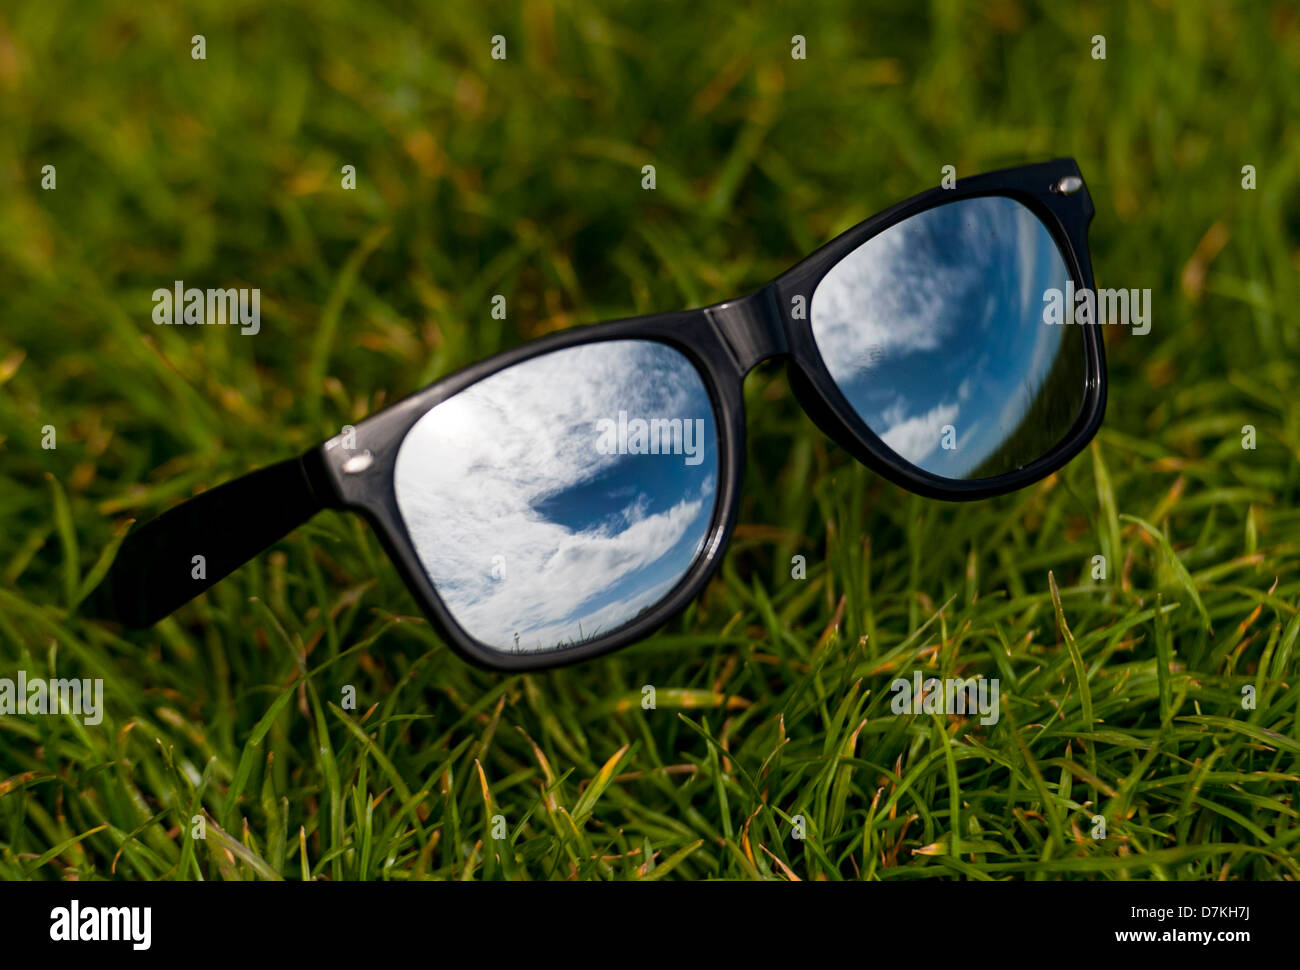 Beau ciel bleu reflété dans une paire de lunettes wayfarer en miroir pour représenter l'été Banque D'Images